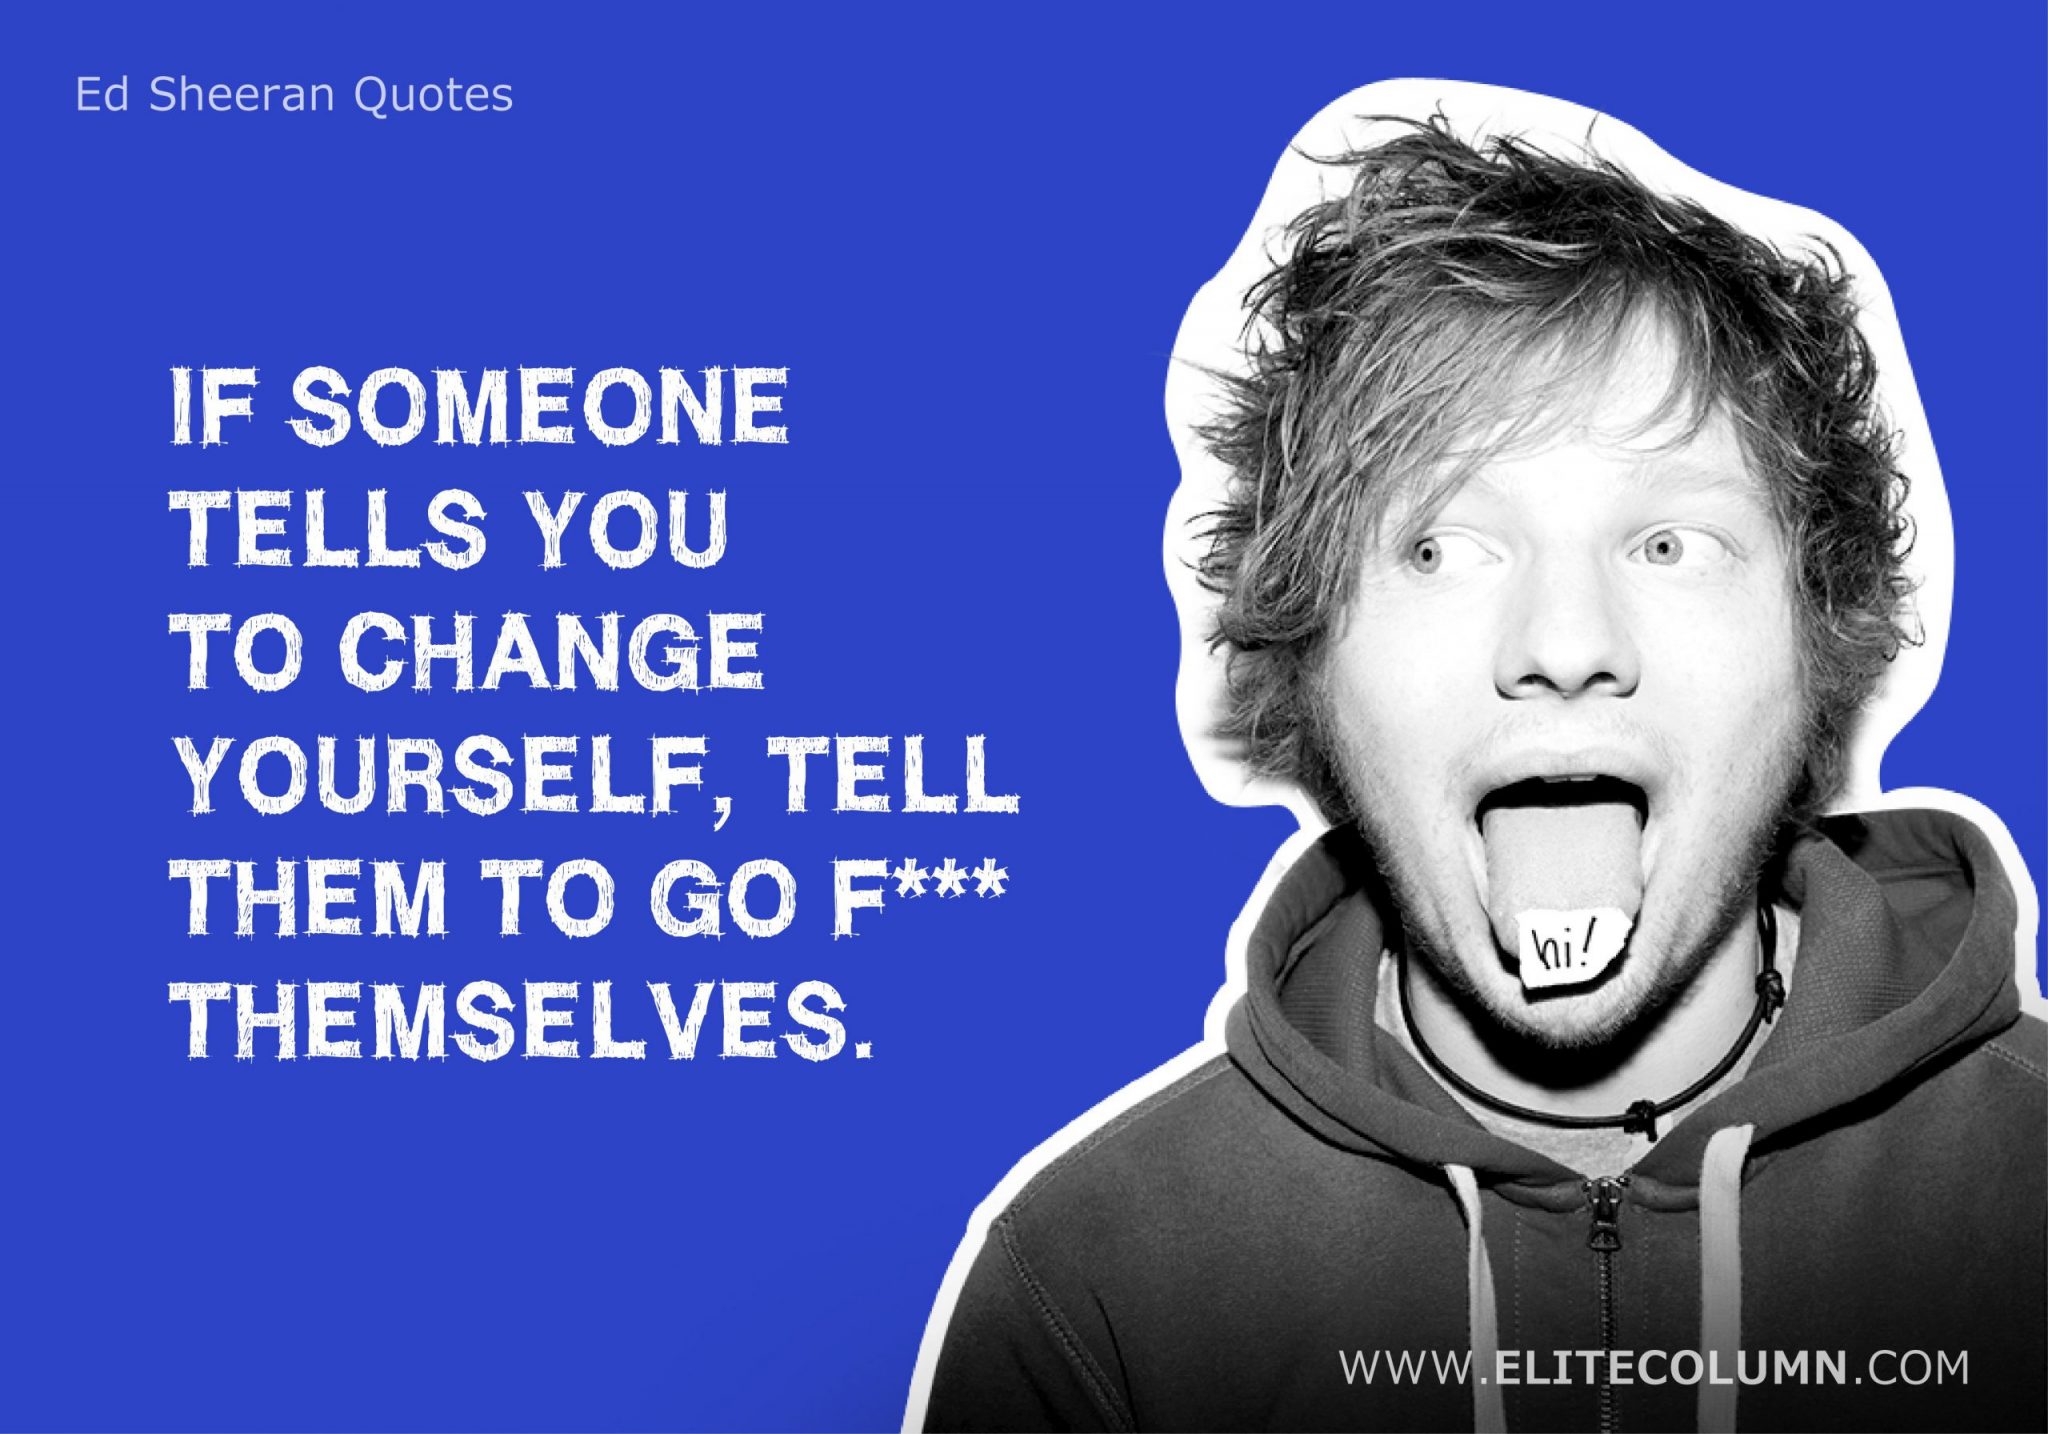 Ed Sheeran Quotes (12)